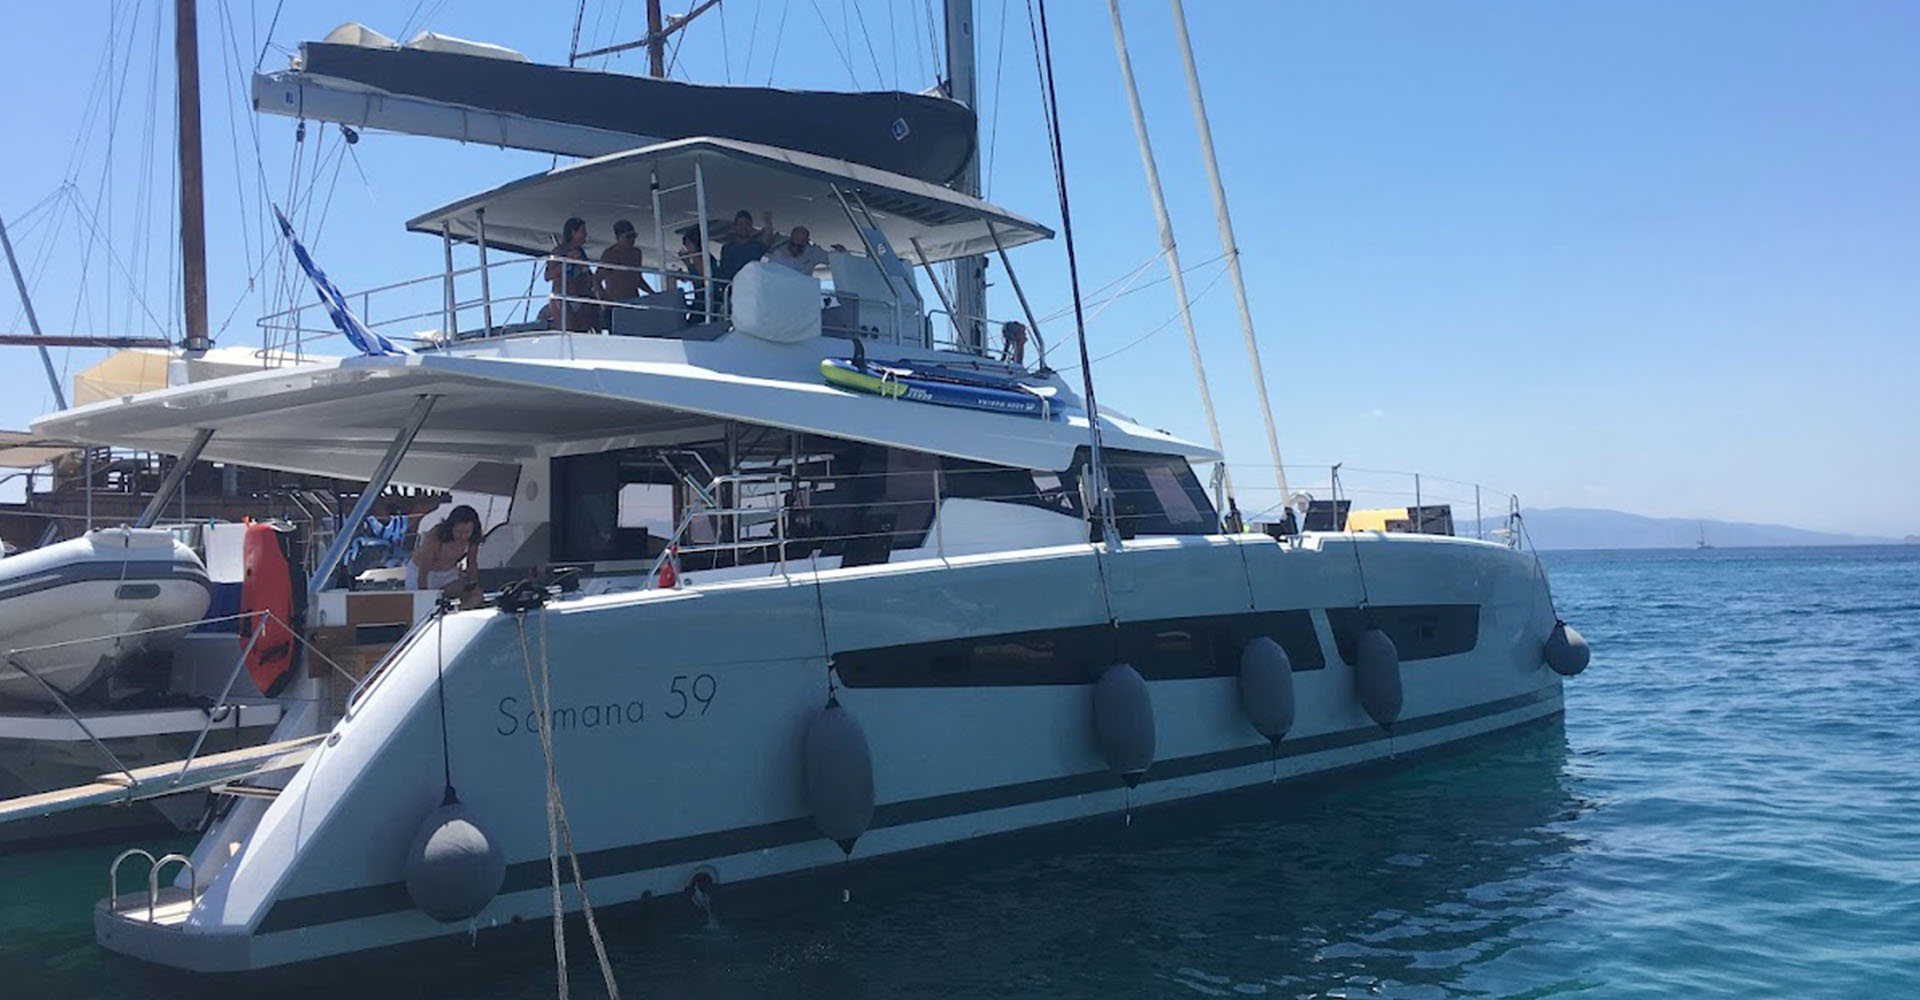 Charter a luxury crewed catamaran in greece